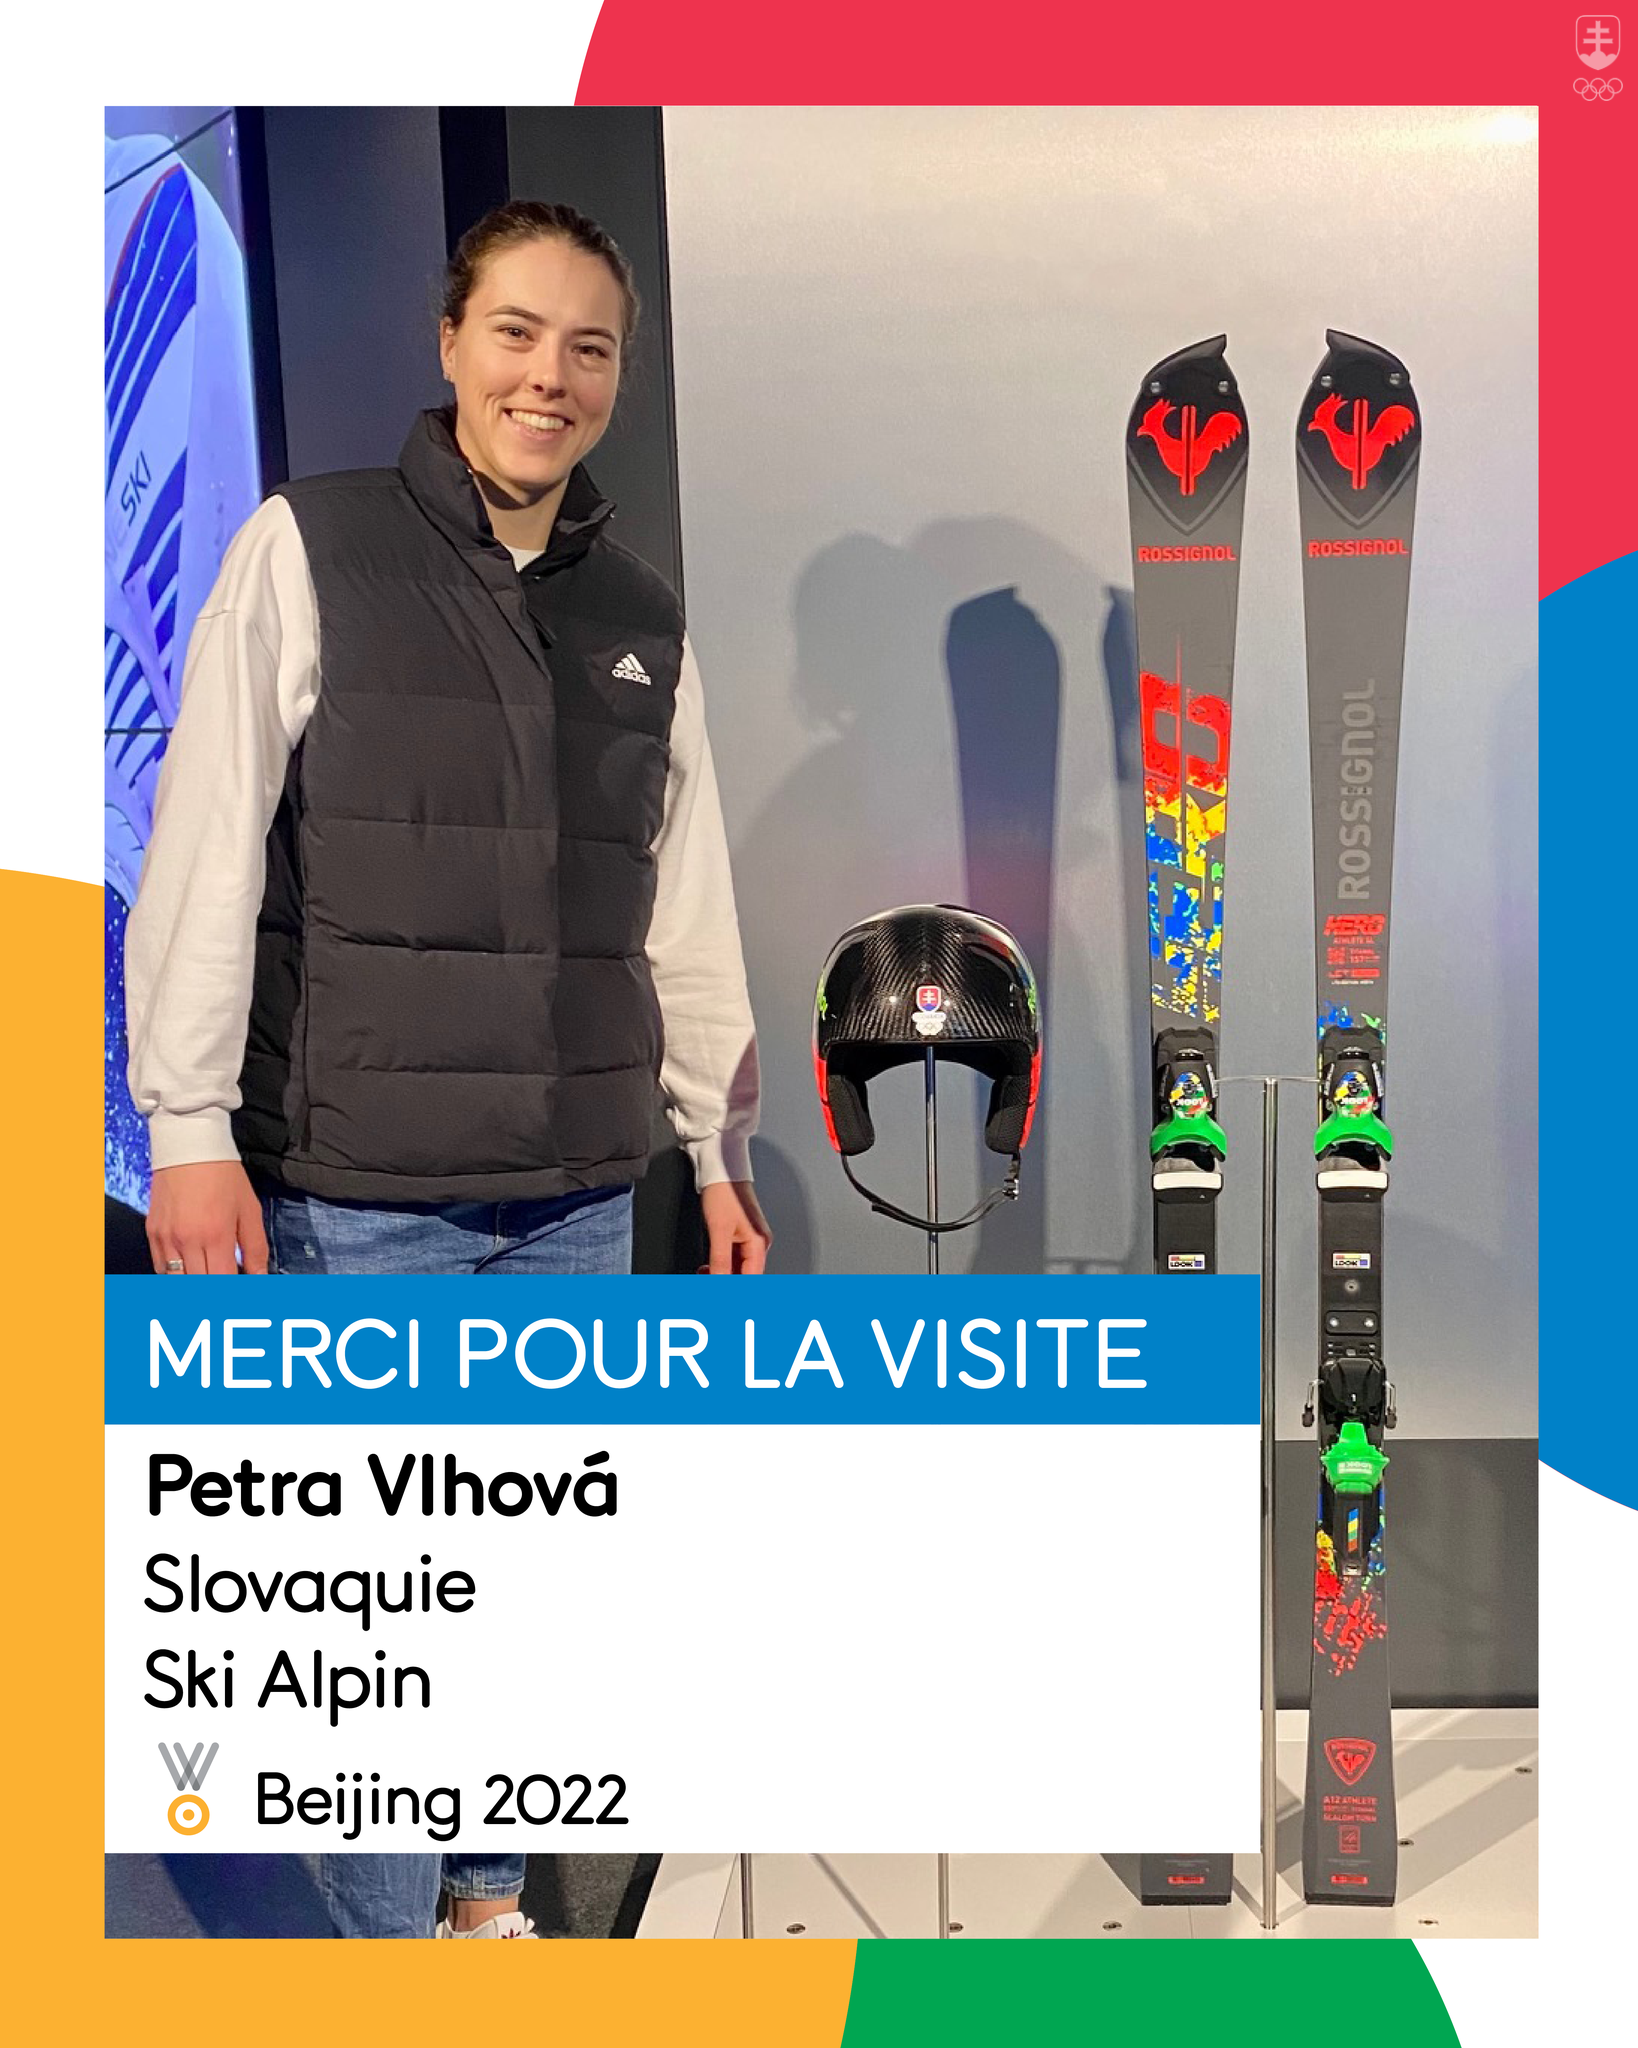 Petra Vlhová pri svojej prilbe, ktorú venovala Olympijskému múzeu v Lausanne, a pri jej lyžiach, ktoré venovala firma Rossignol.